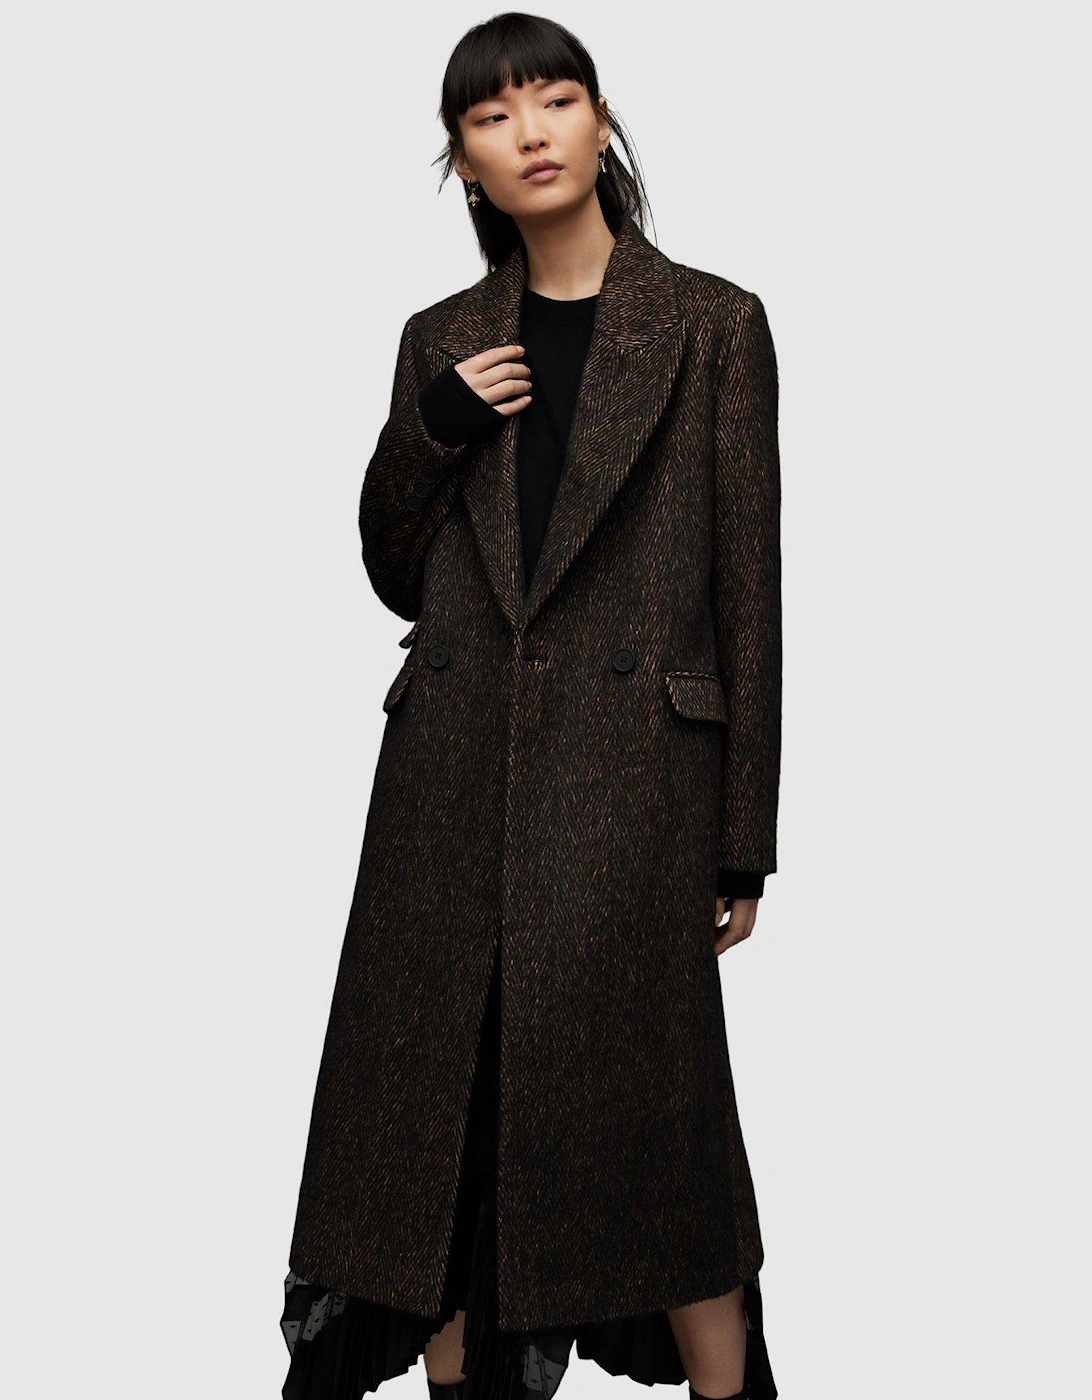 Elyria Coat - Black Multi, 3 of 2